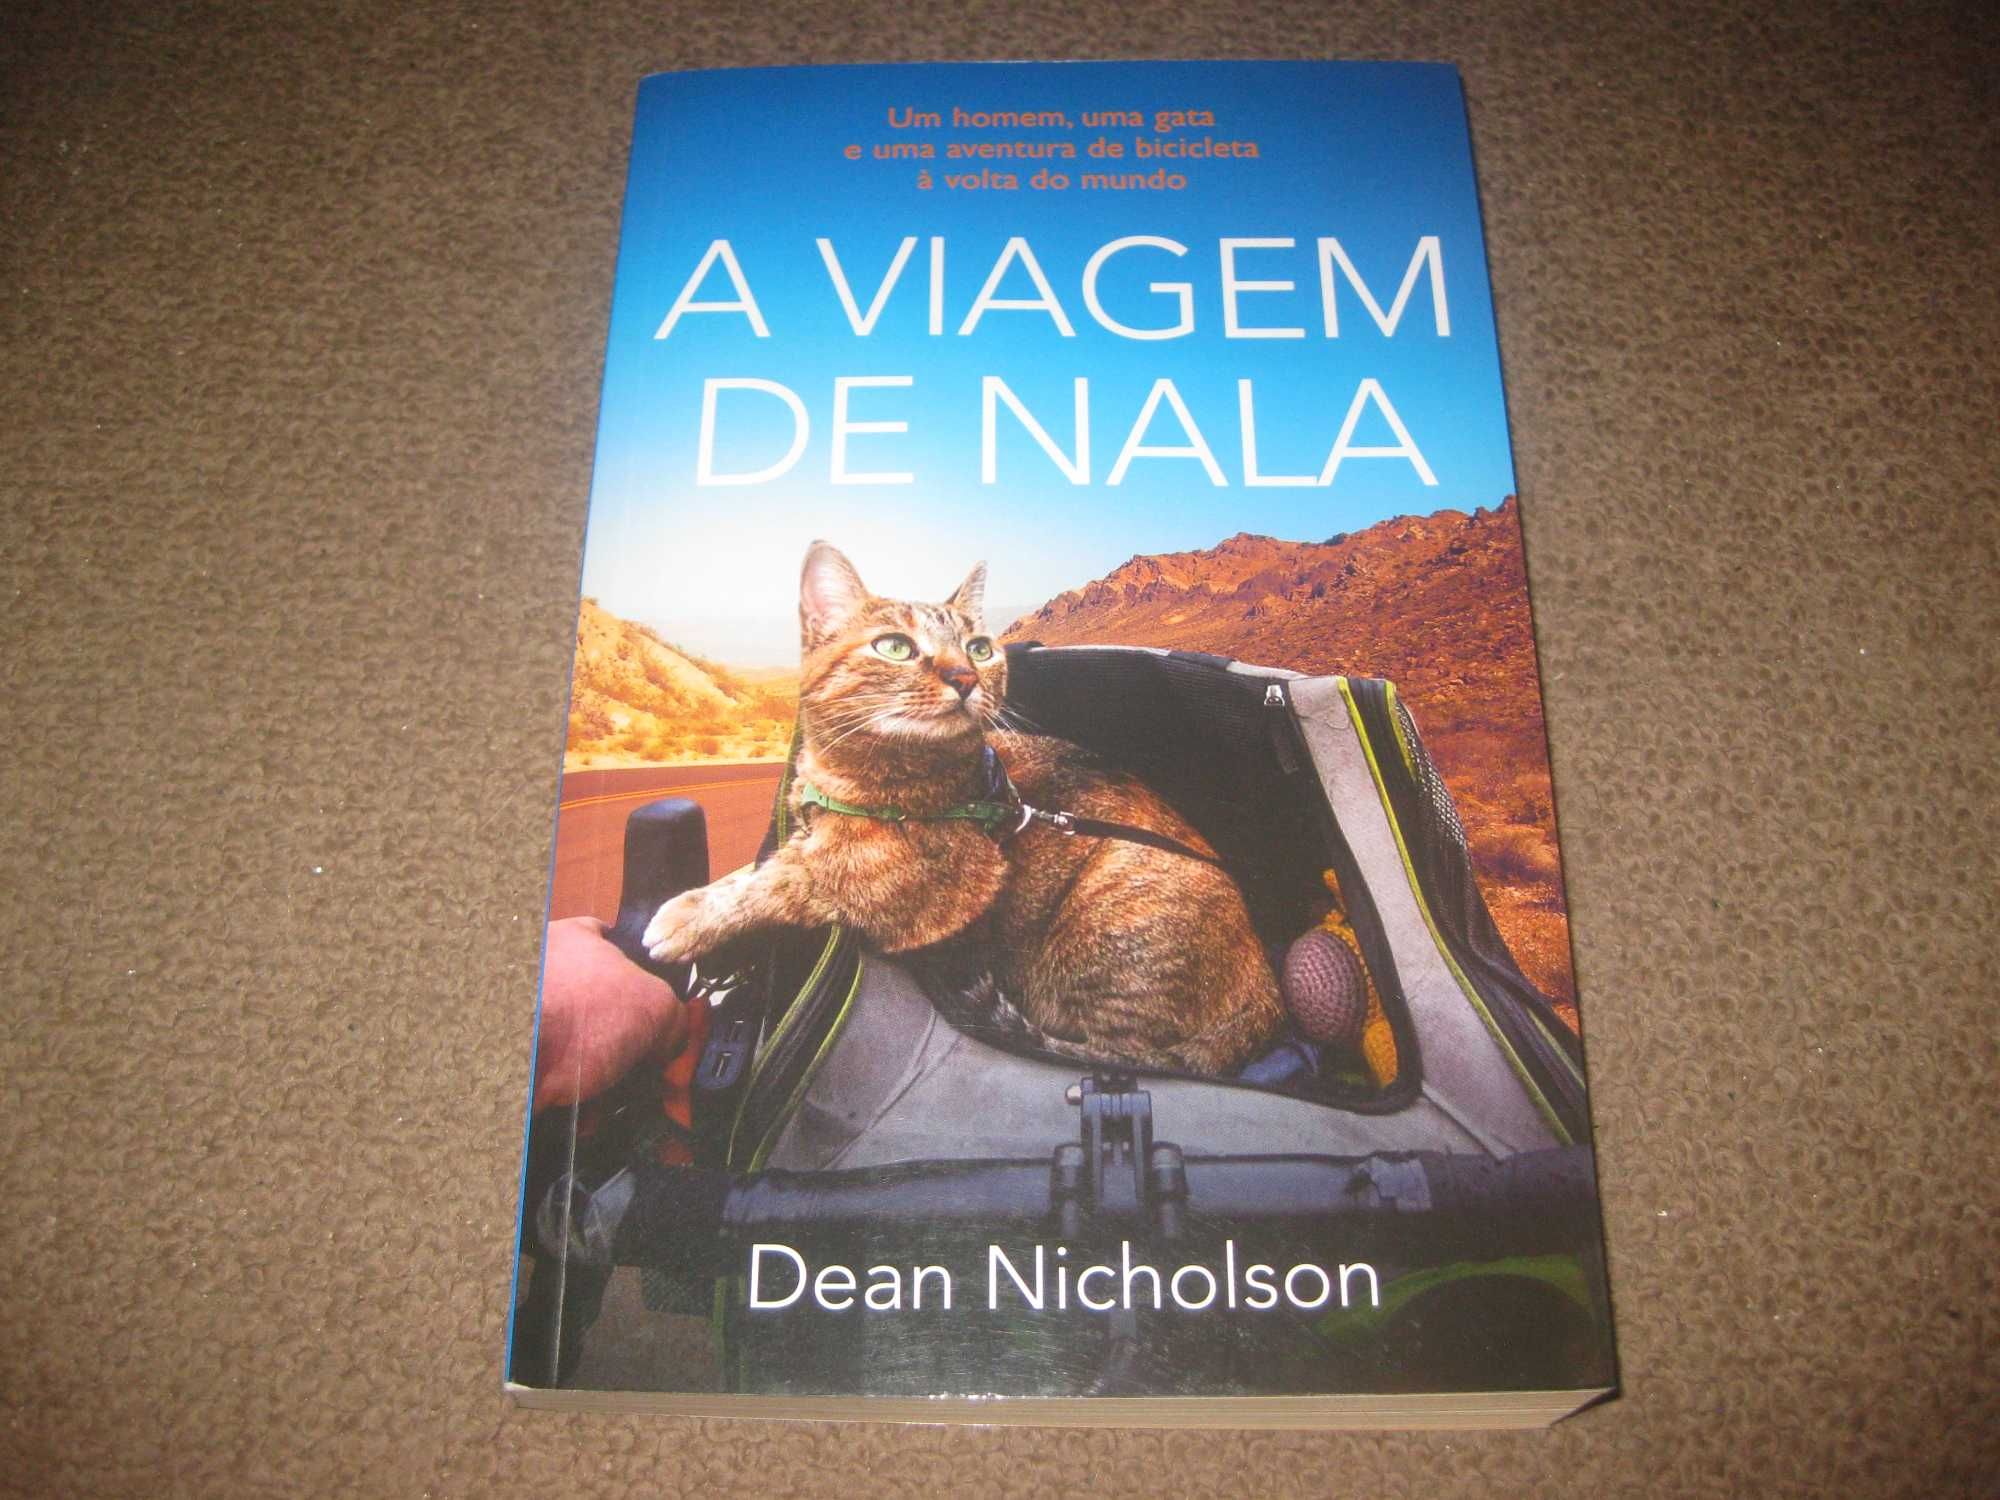 Livro "A Viagem de Nala" de Dean Nicholson